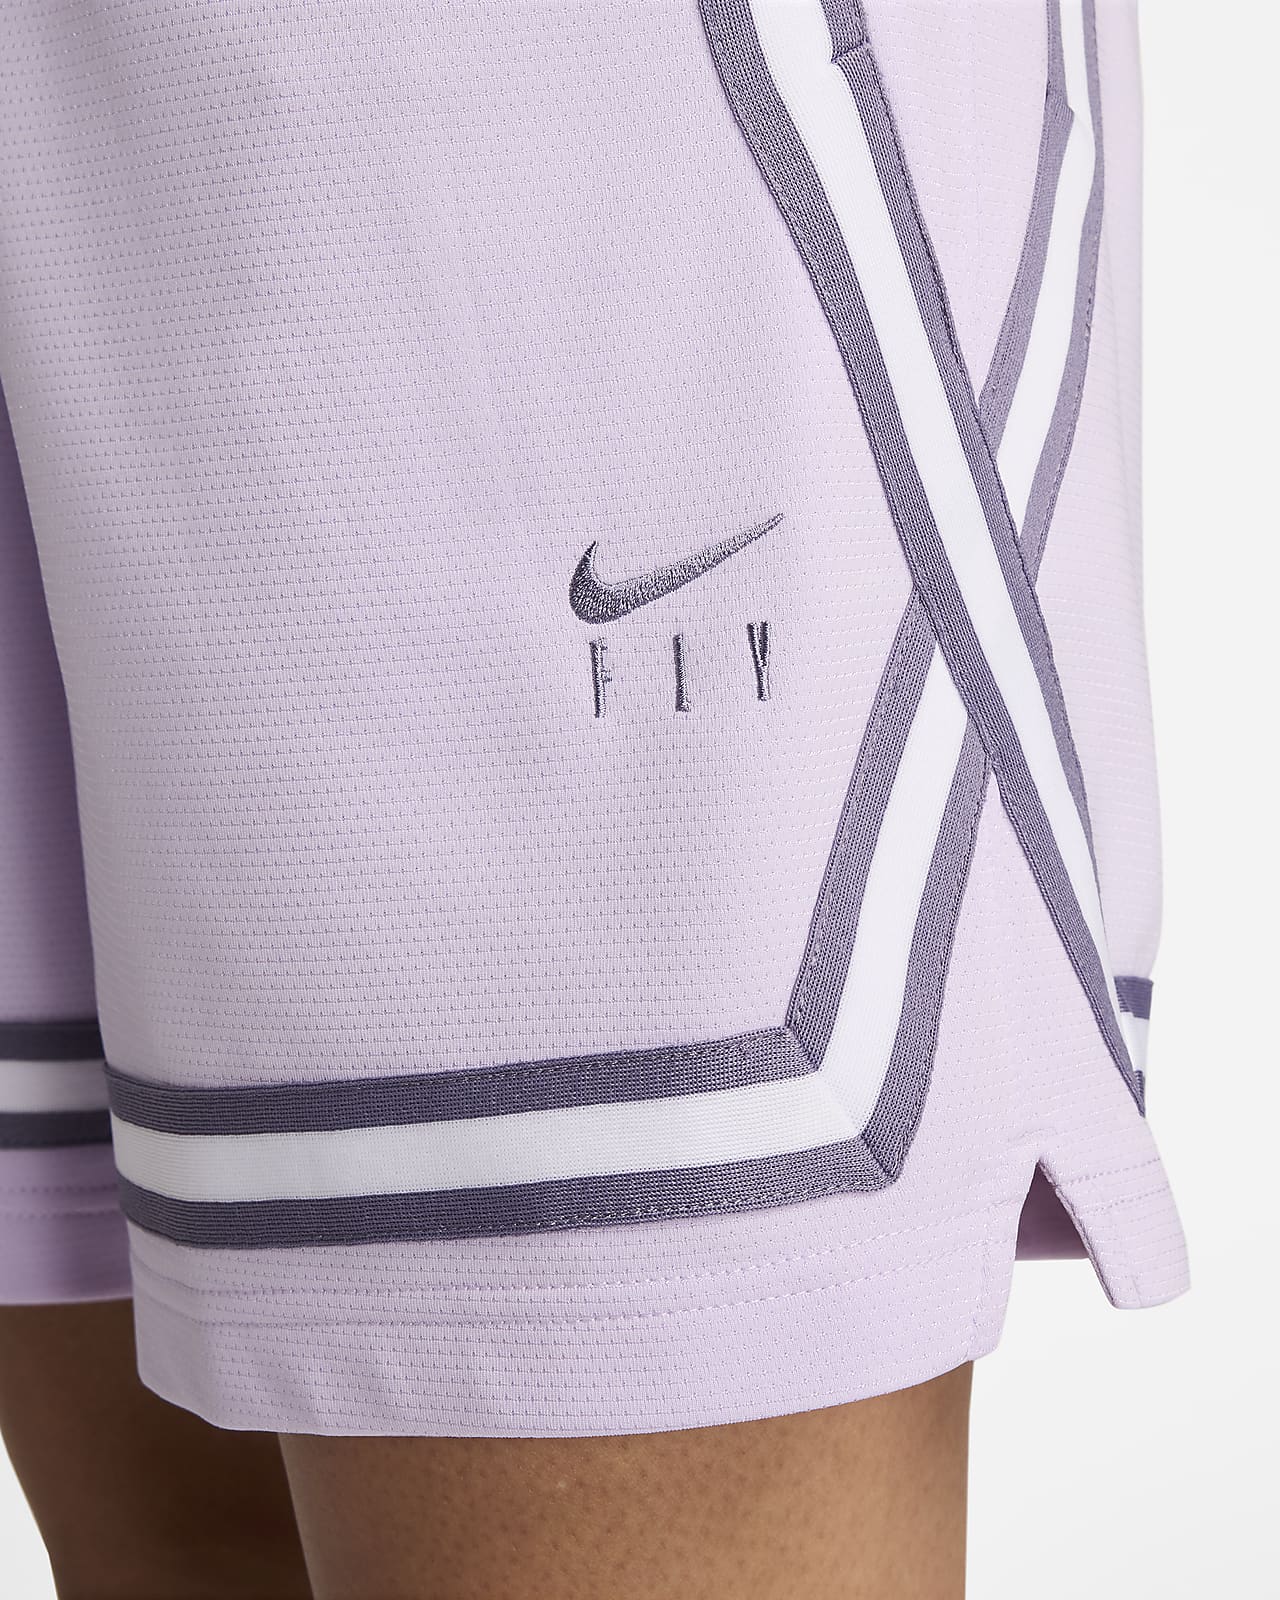 Shorts Nike Fly Crossover - Feminino em Promoção